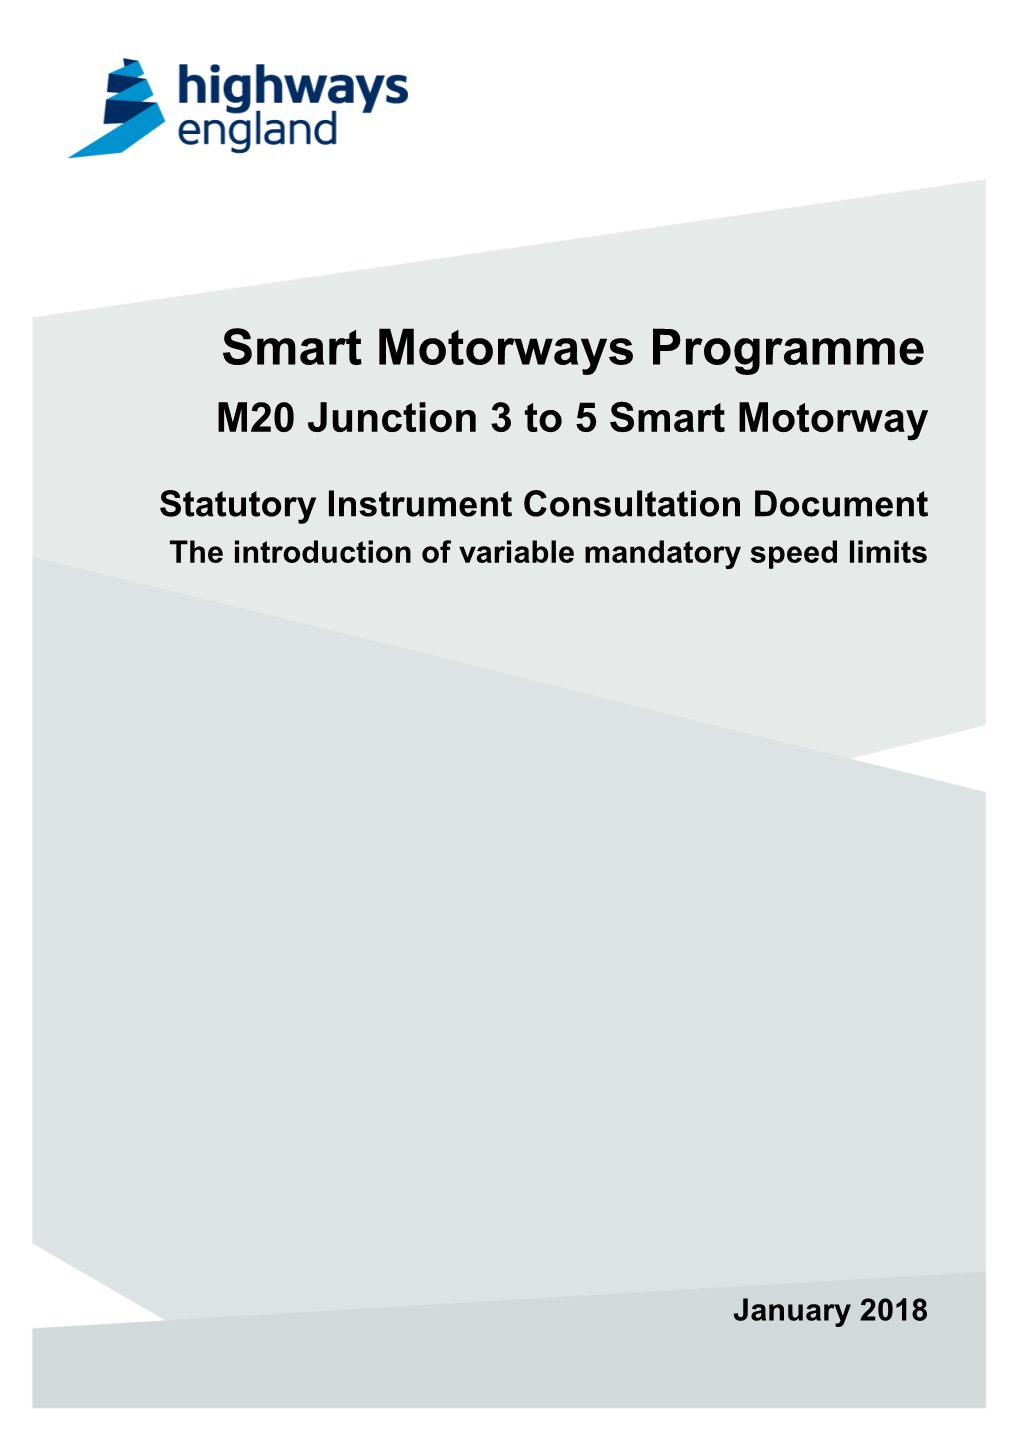 Smart Motorways Programme M20 Junction 3 to 5 Smart Motorway